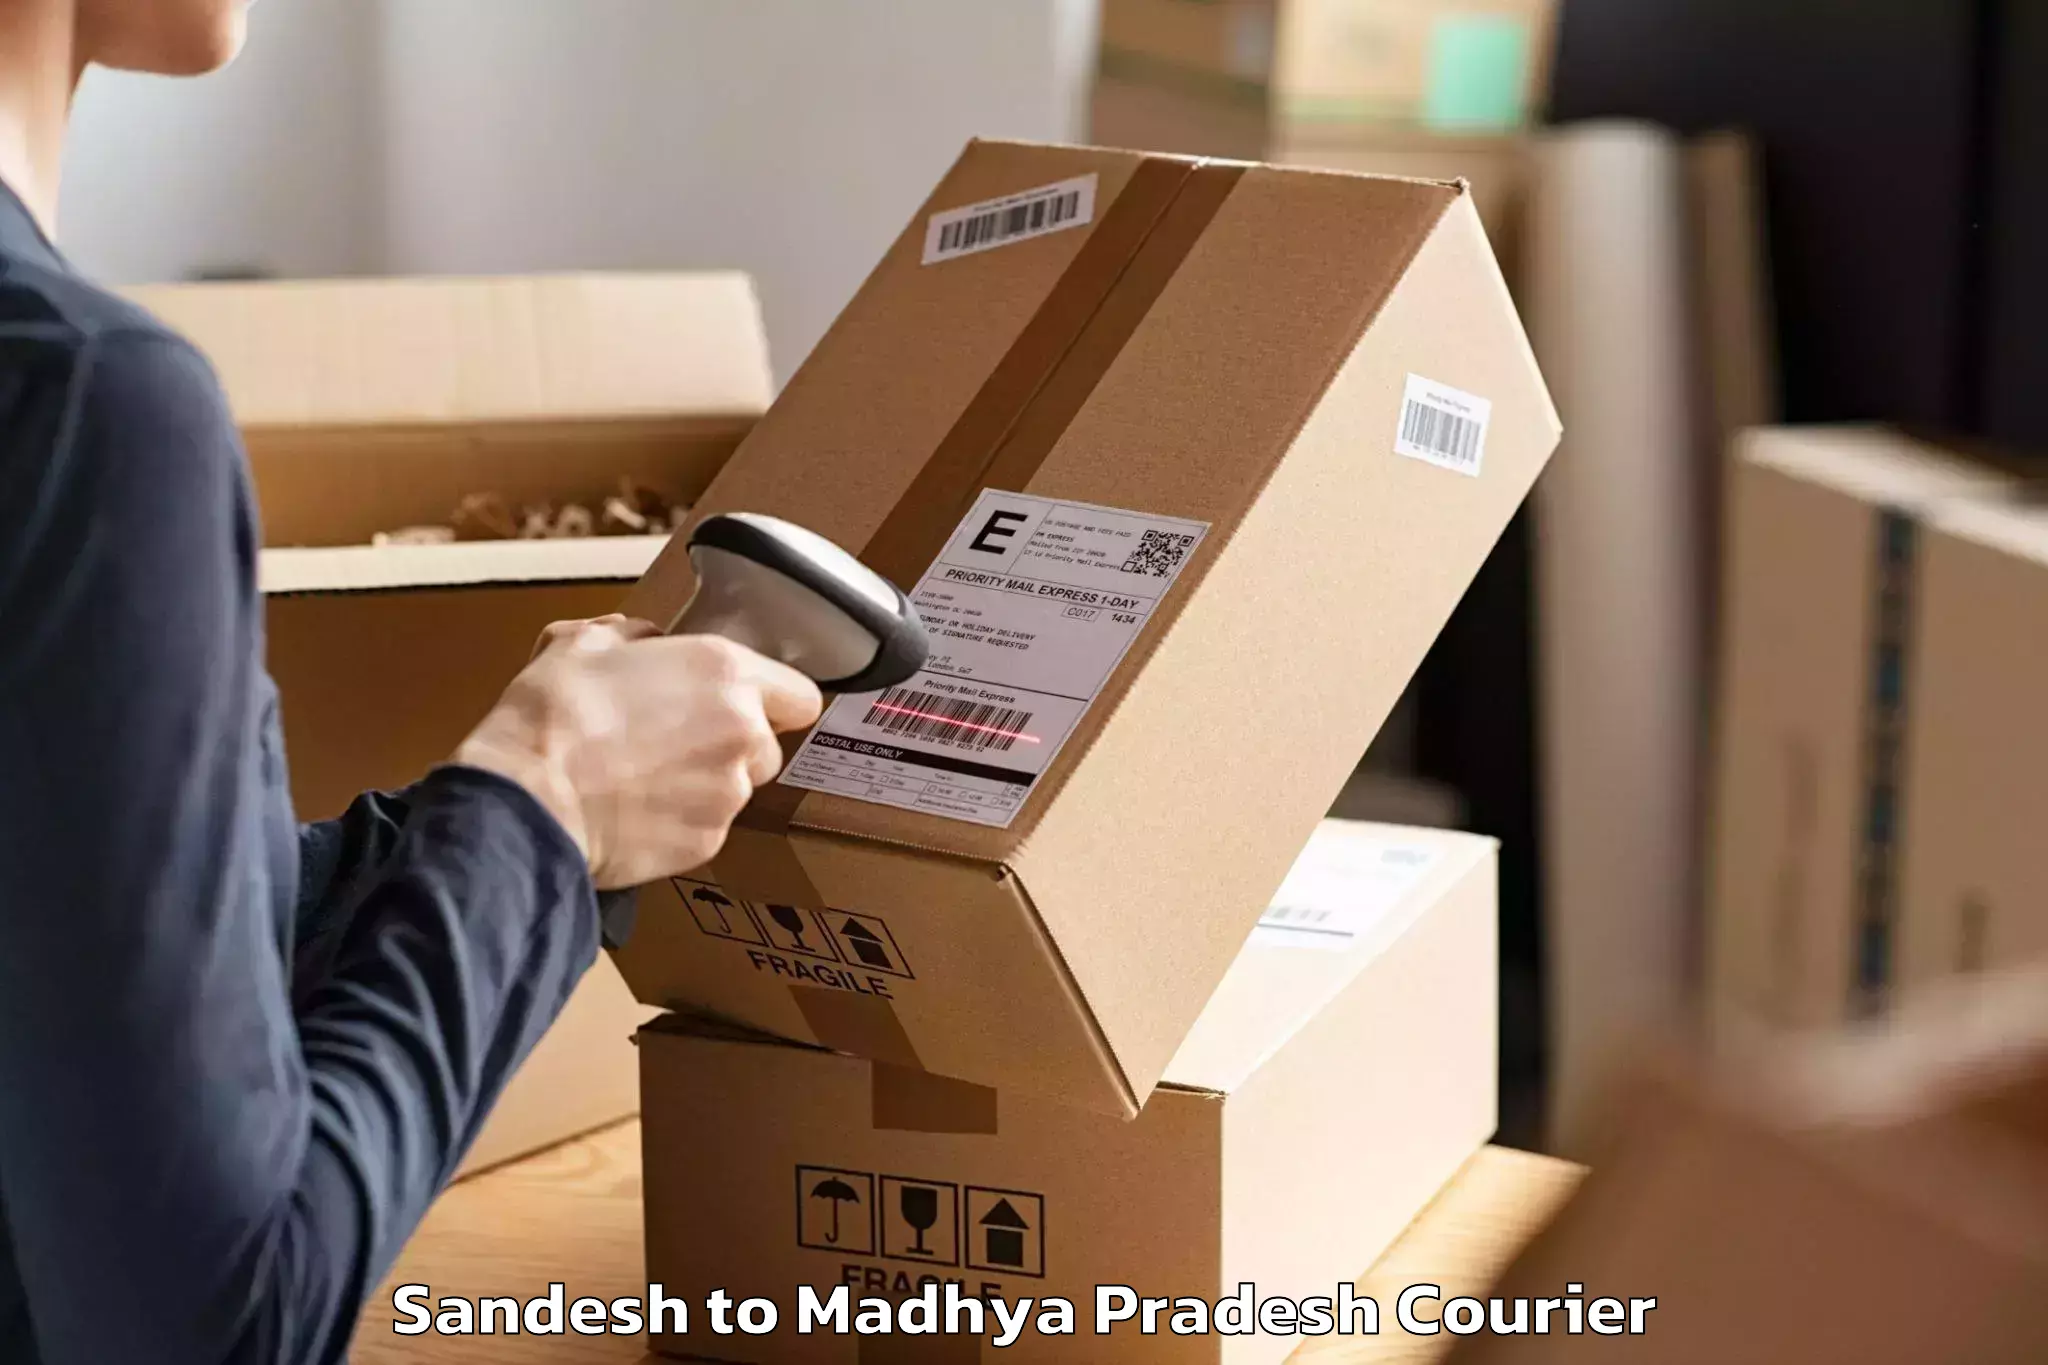 Furniture transport professionals Sandesh to Nagda